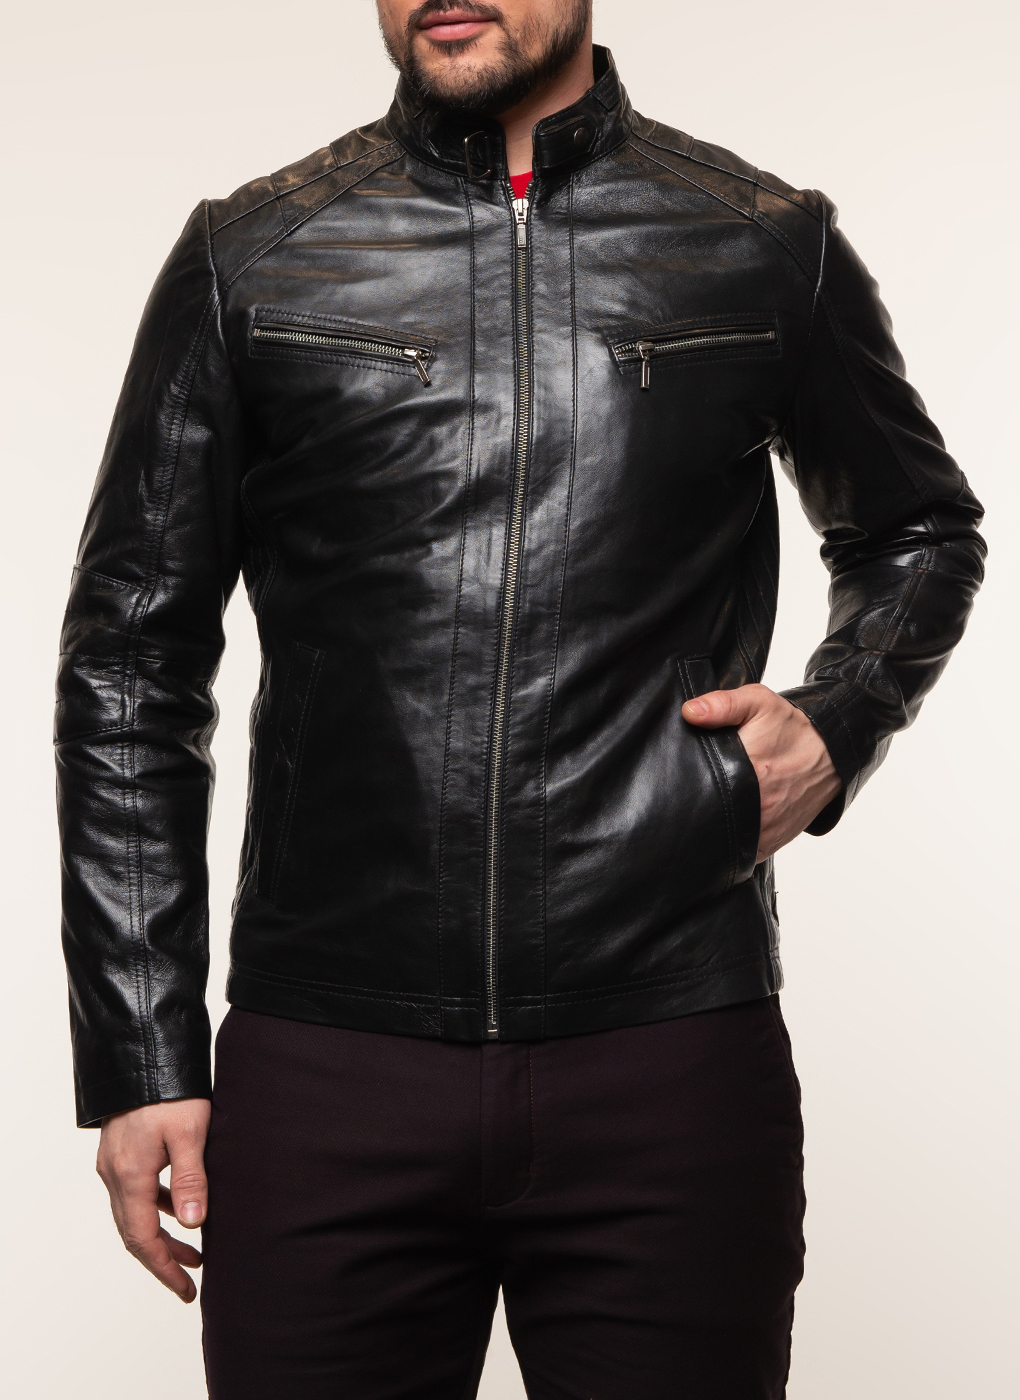 Кожаная куртка мужская Каляев 62647 черная 48 RU